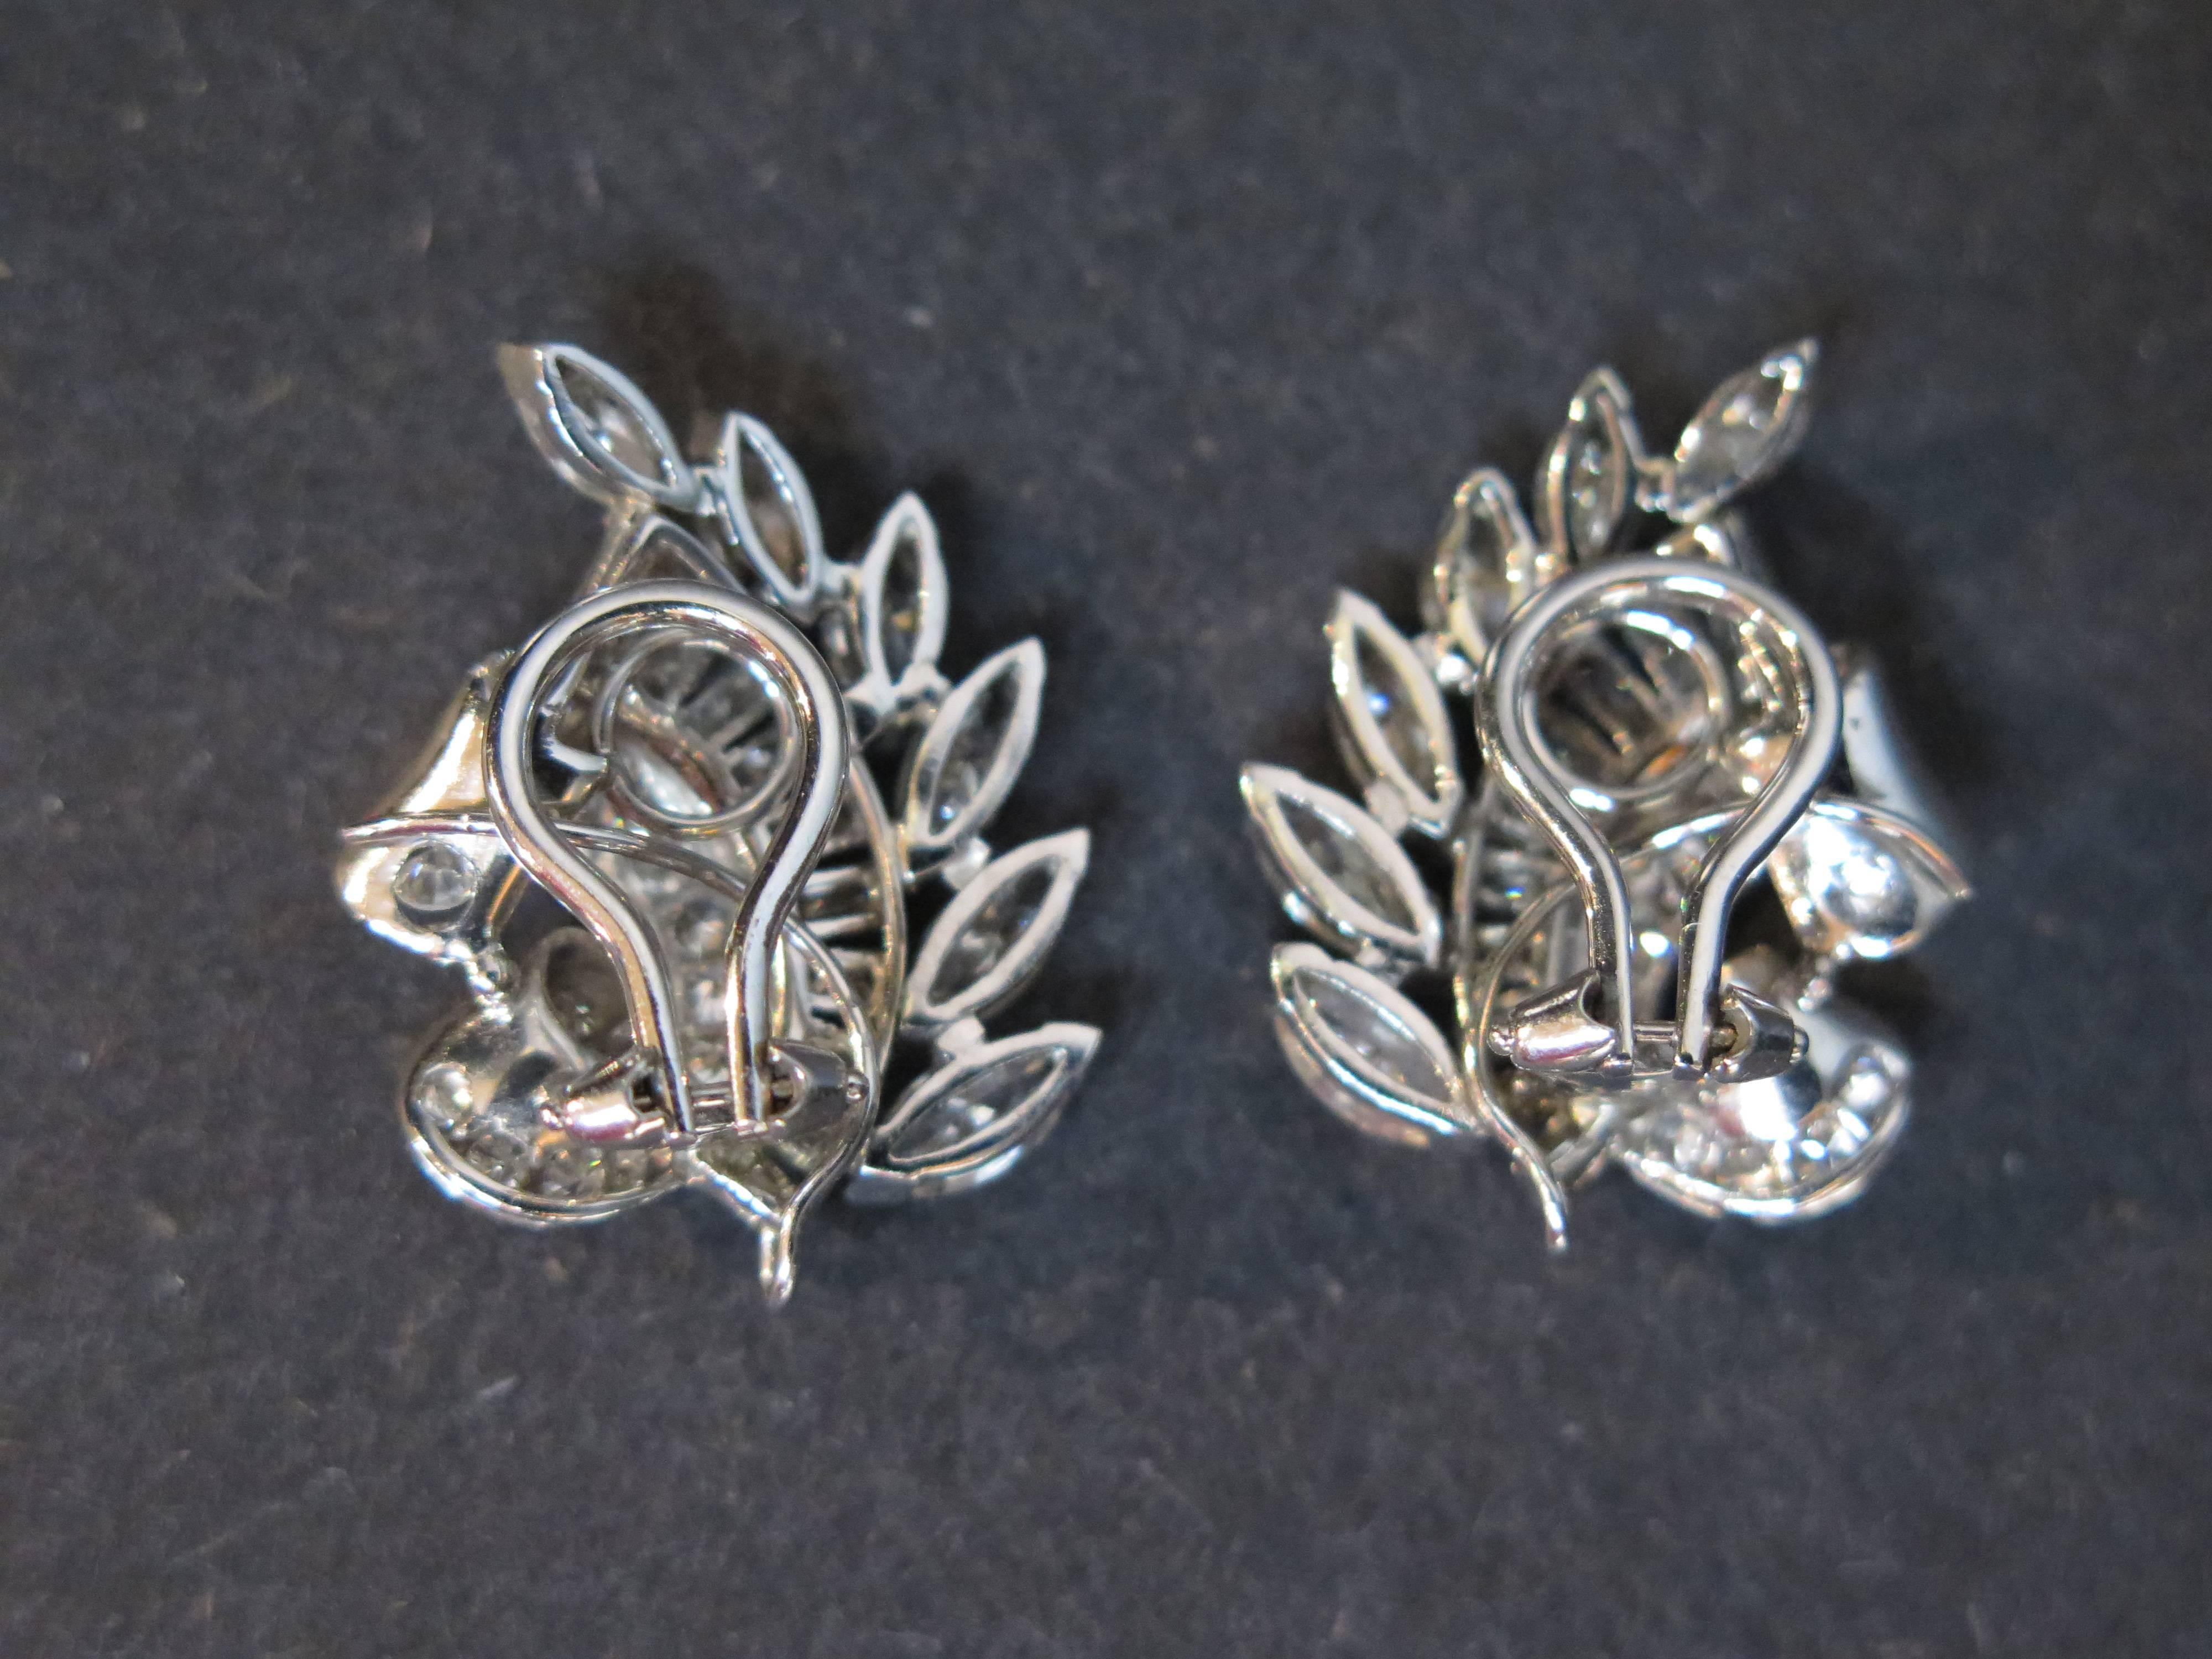 Une merveilleuse et brillante paire d'élégantes boucles d'oreilles en diamant et platine, dans un style français classique des années 1960. 

Les boucles d'oreilles à clip en diamant ont la forme de gerbes de blé stylisées en volutes. 
Un crochet en